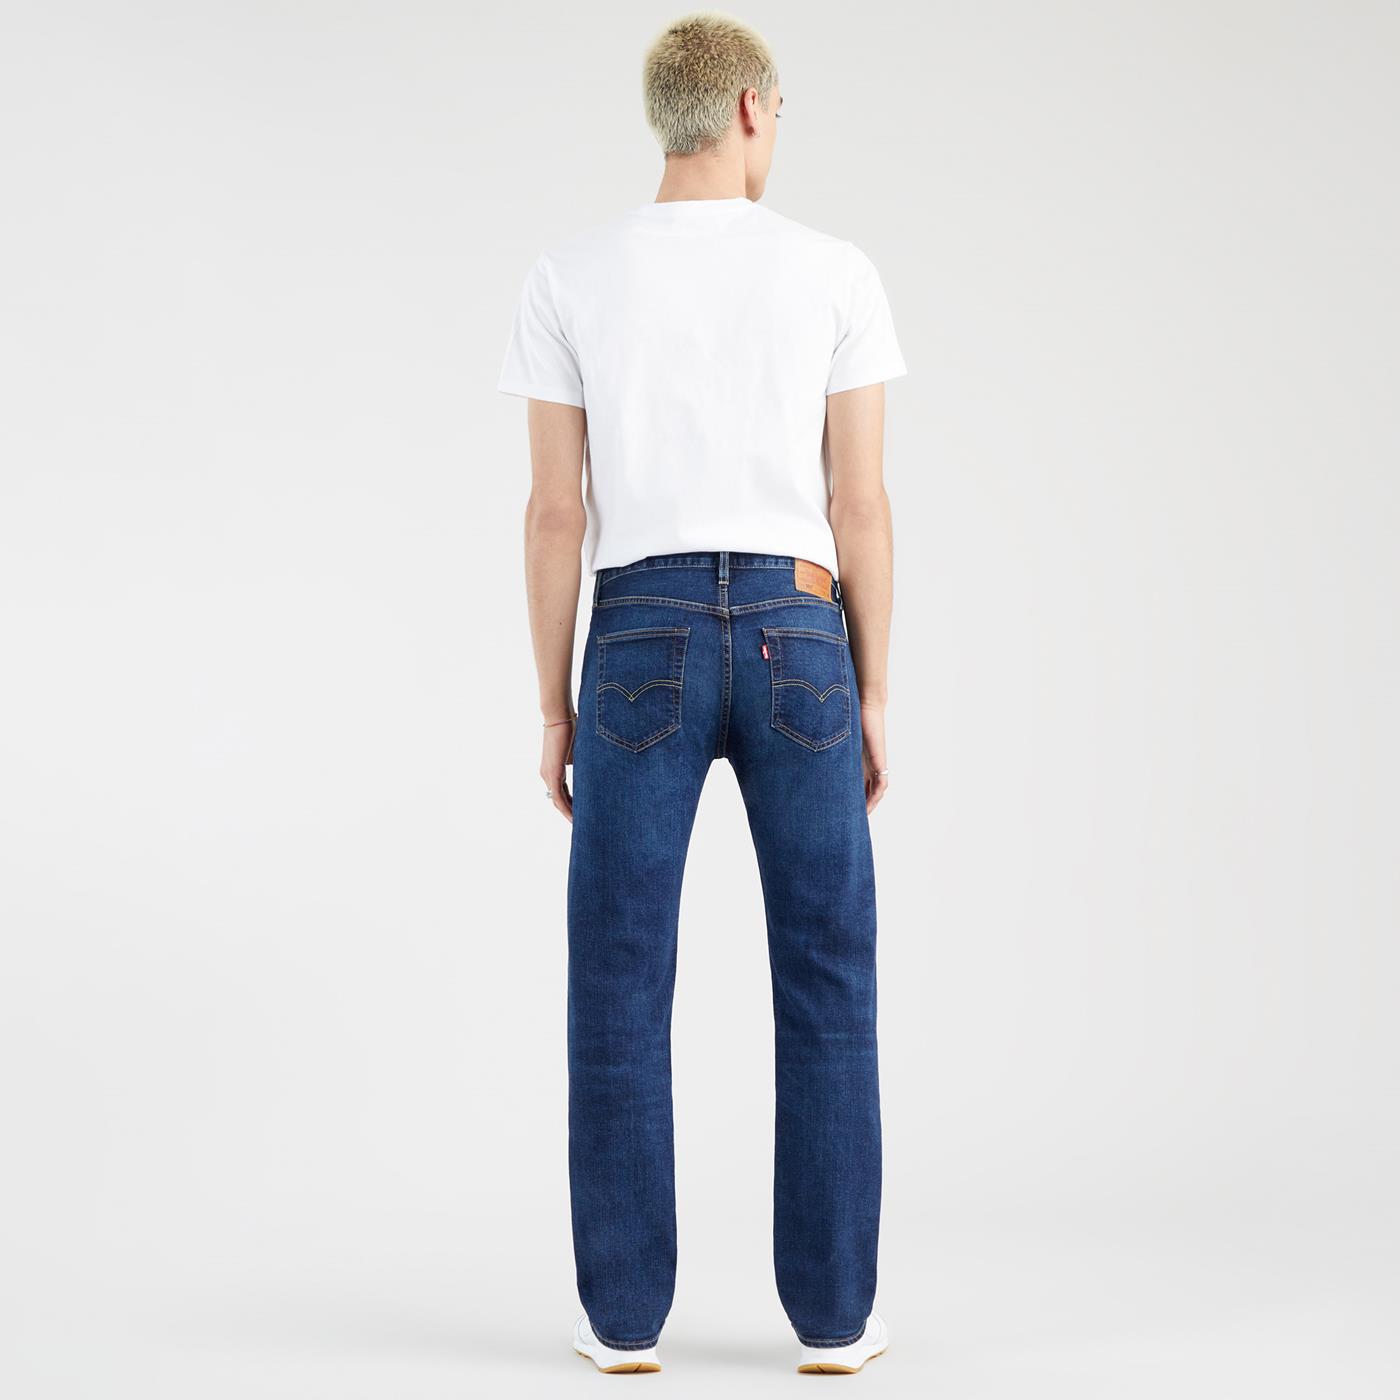 Pants Levis 501® Original Jeans Blue for Man | 00501-3199 | XTREME.PT